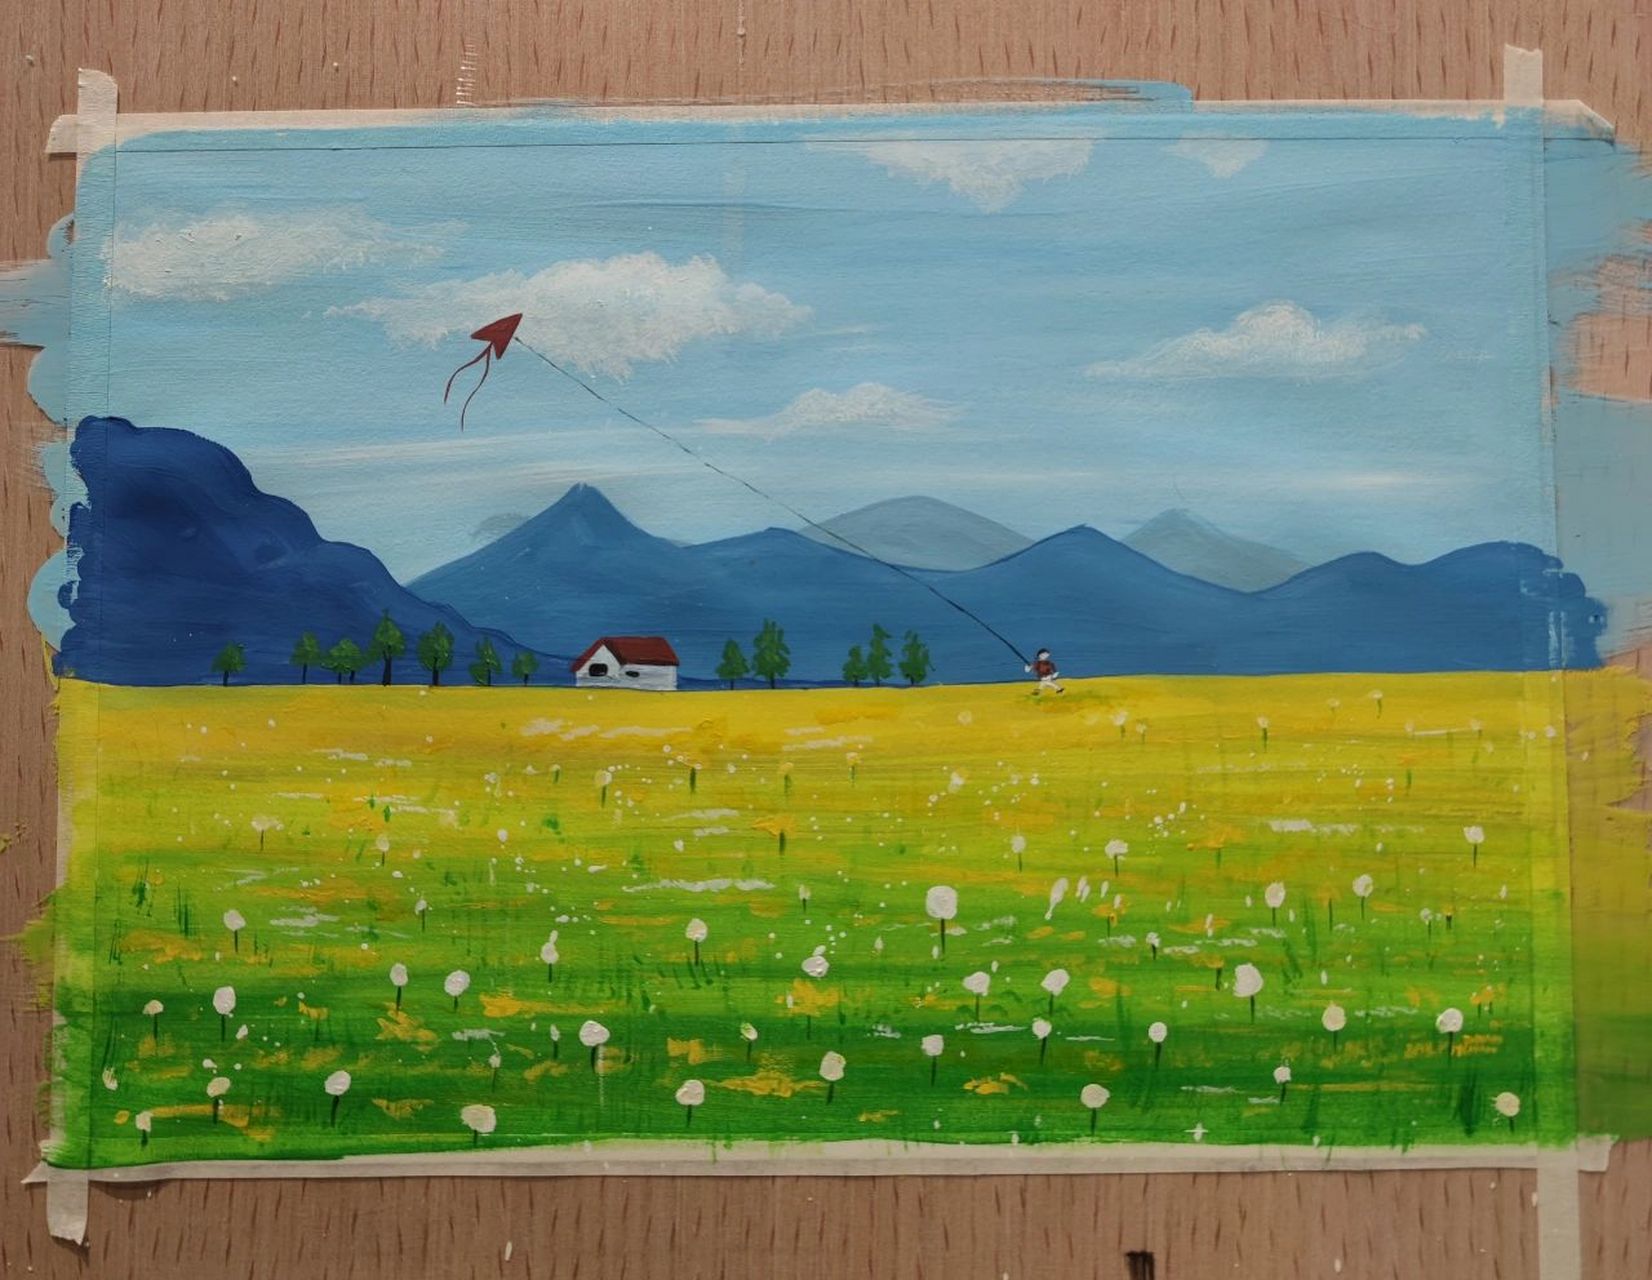 儿童水粉画 春天的景色 放风筝 步骤: 1,画出天空,草地和油菜花田,后